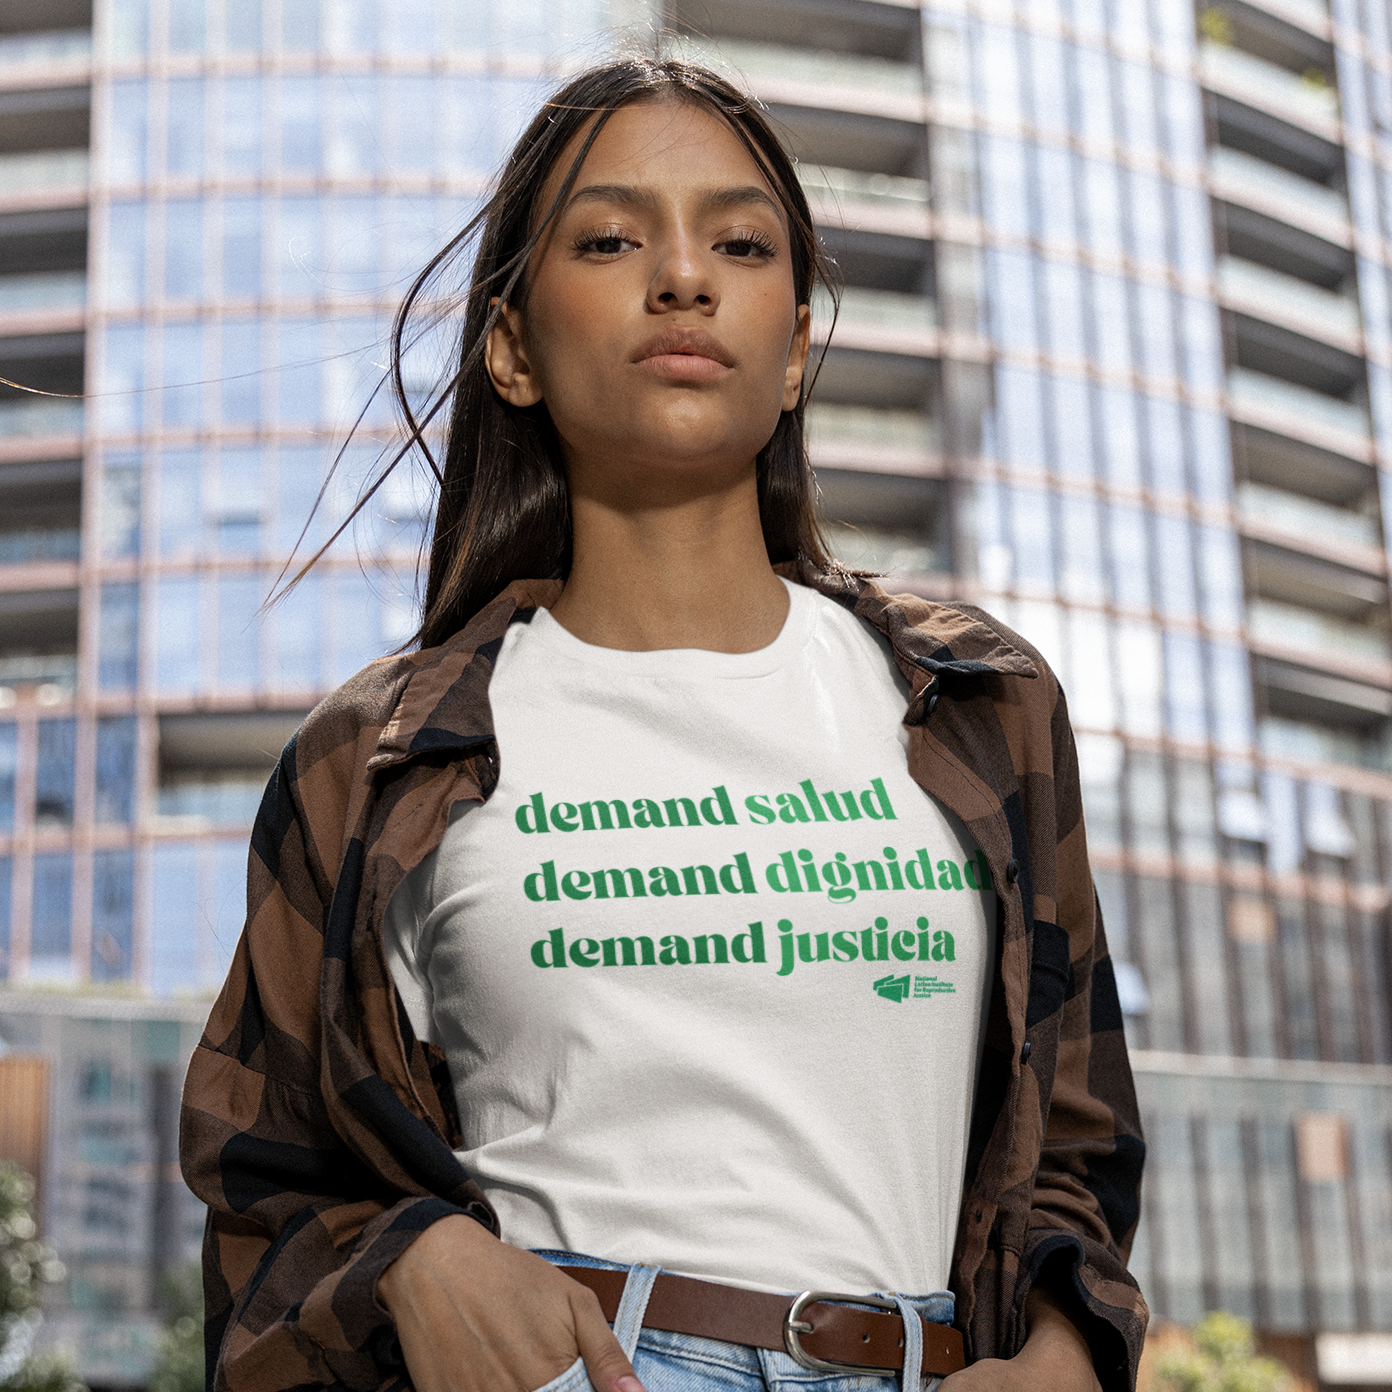 Camiseta Demanda Salud, Dignidad, Justicia